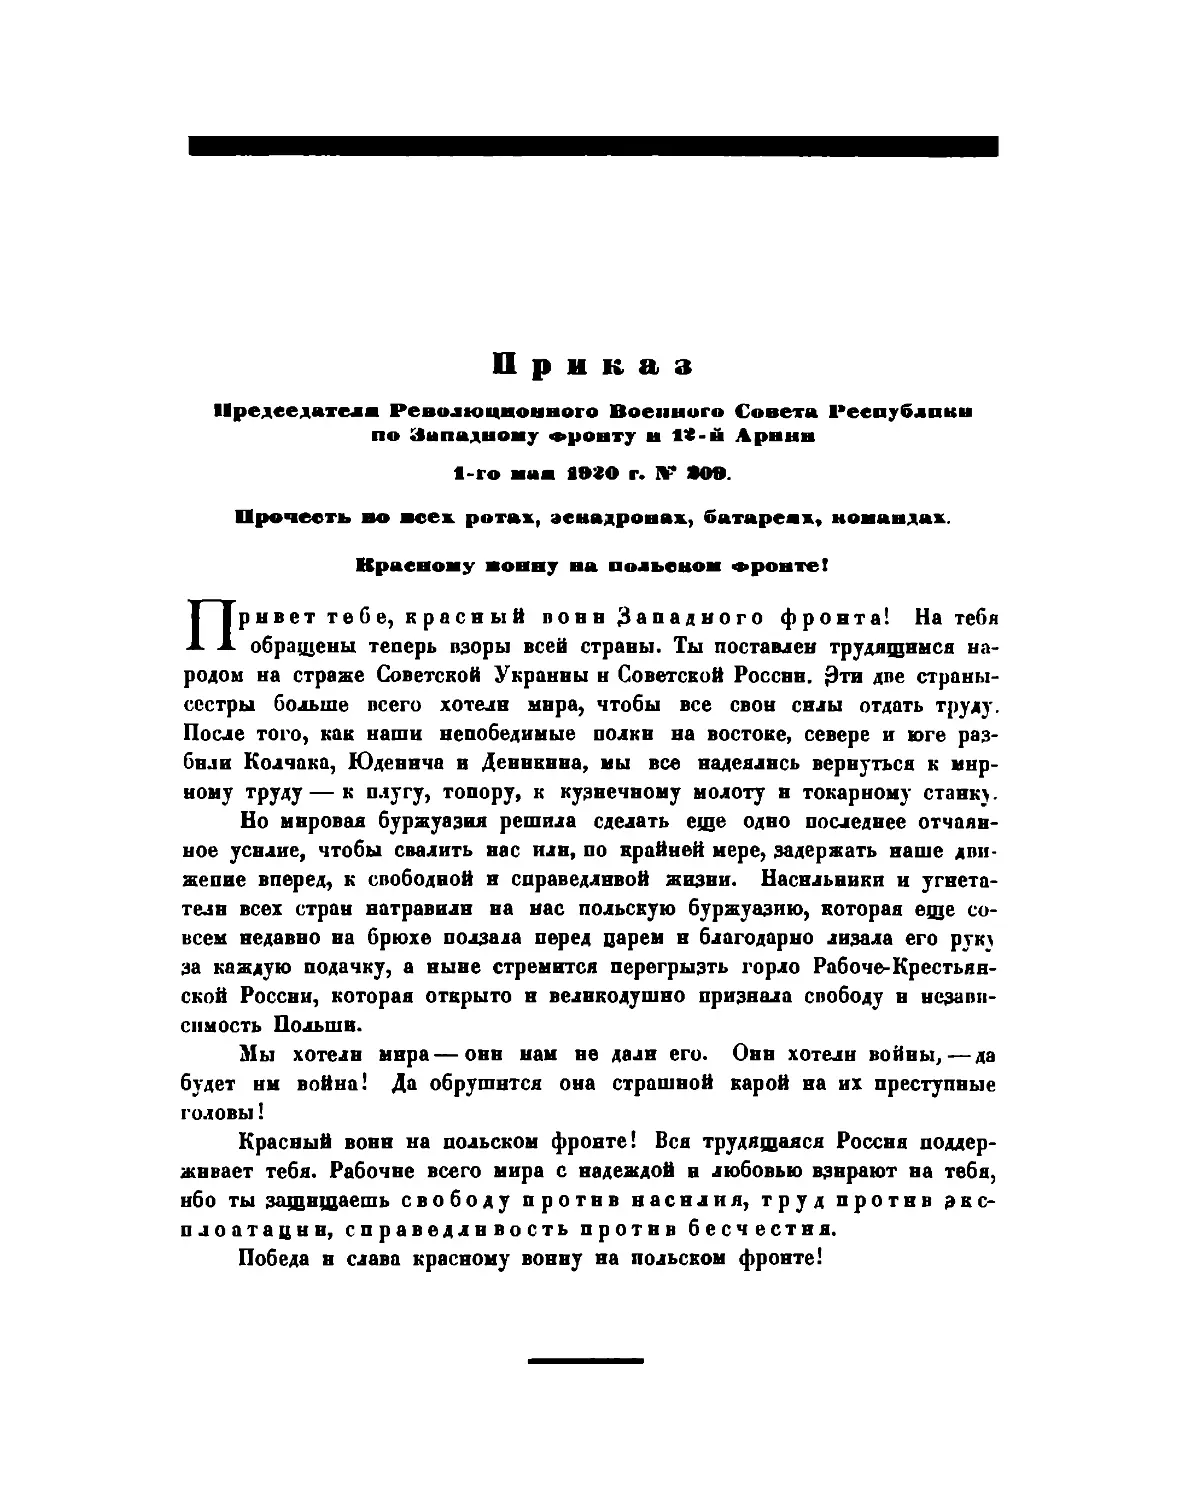 Приказ Пред. РВСР по Западному фронту и 12-й армии от 1 мая 1920 г. № 209